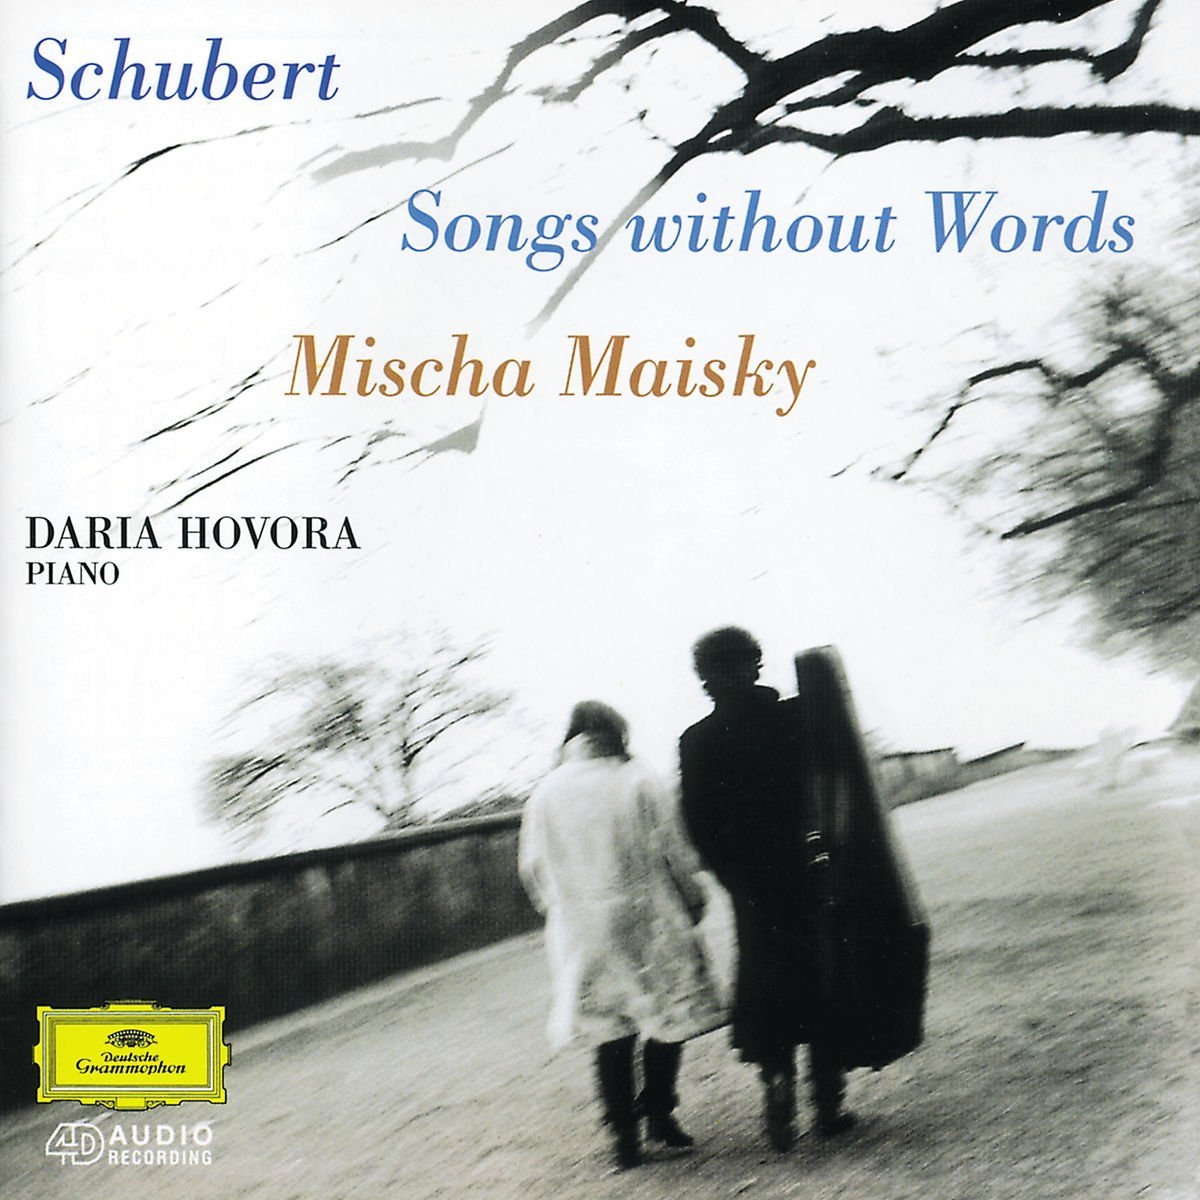 Schubert - Songs without Words | Mischa Maisky, Daria Hovora